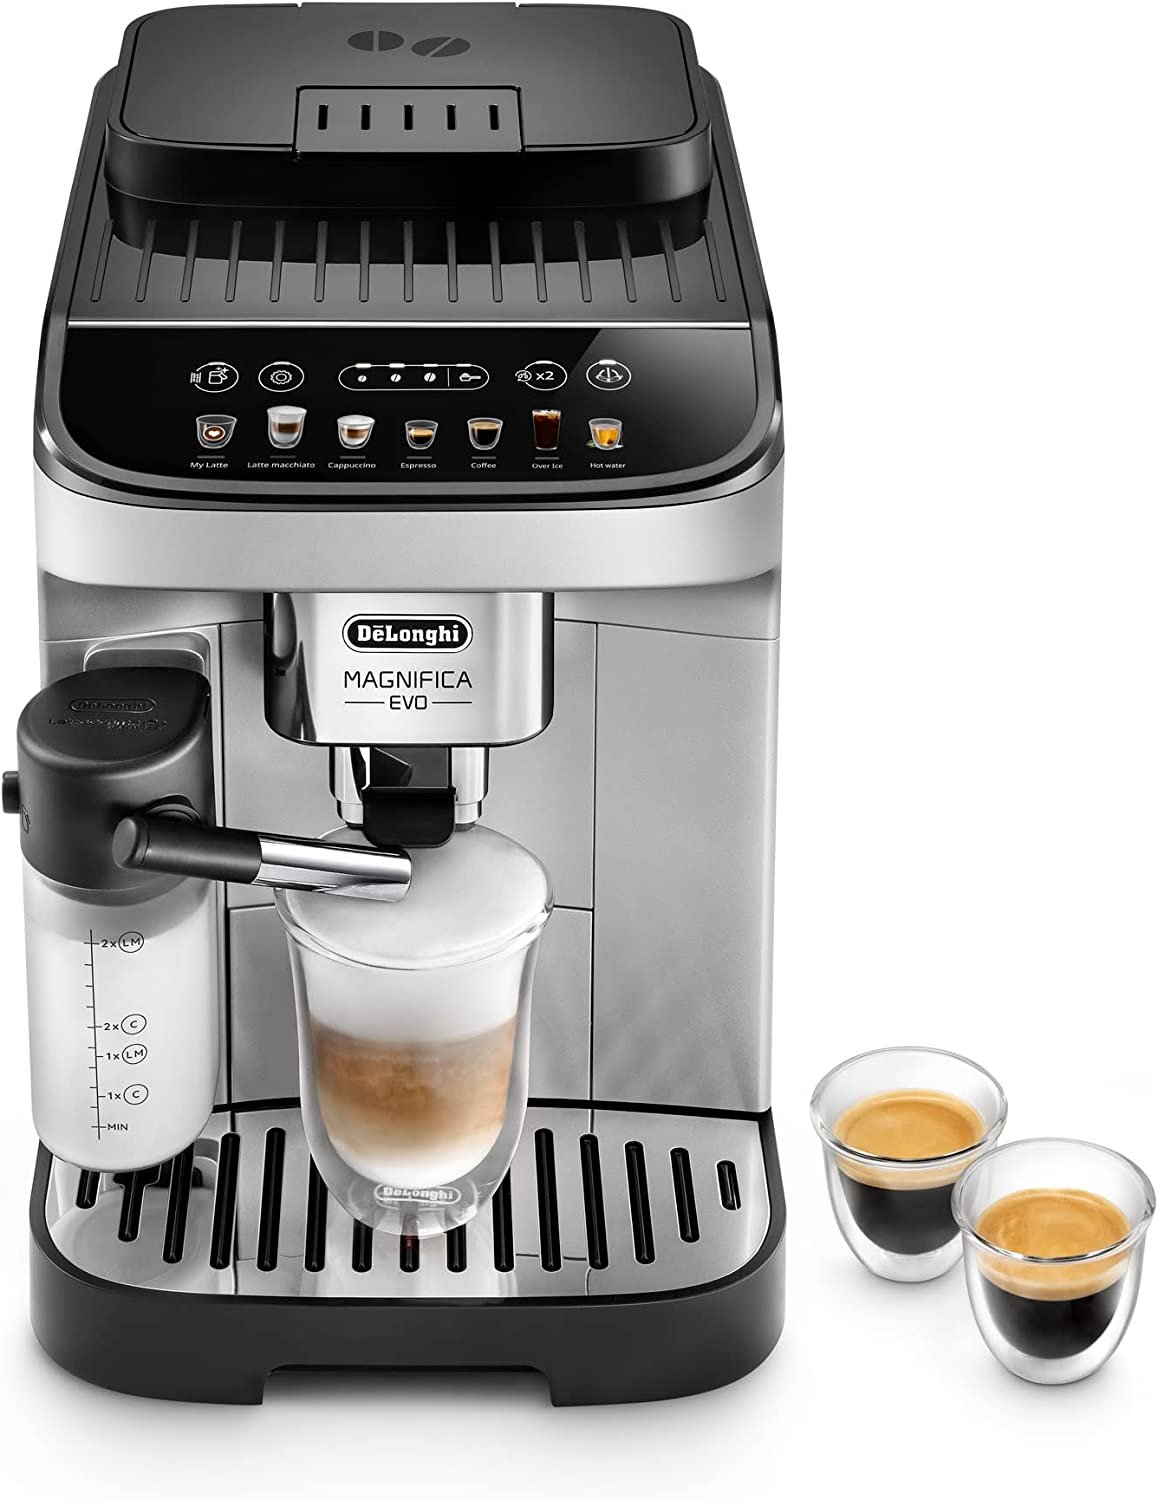 1 Magnifica Evo Coffee and Espresso Maker